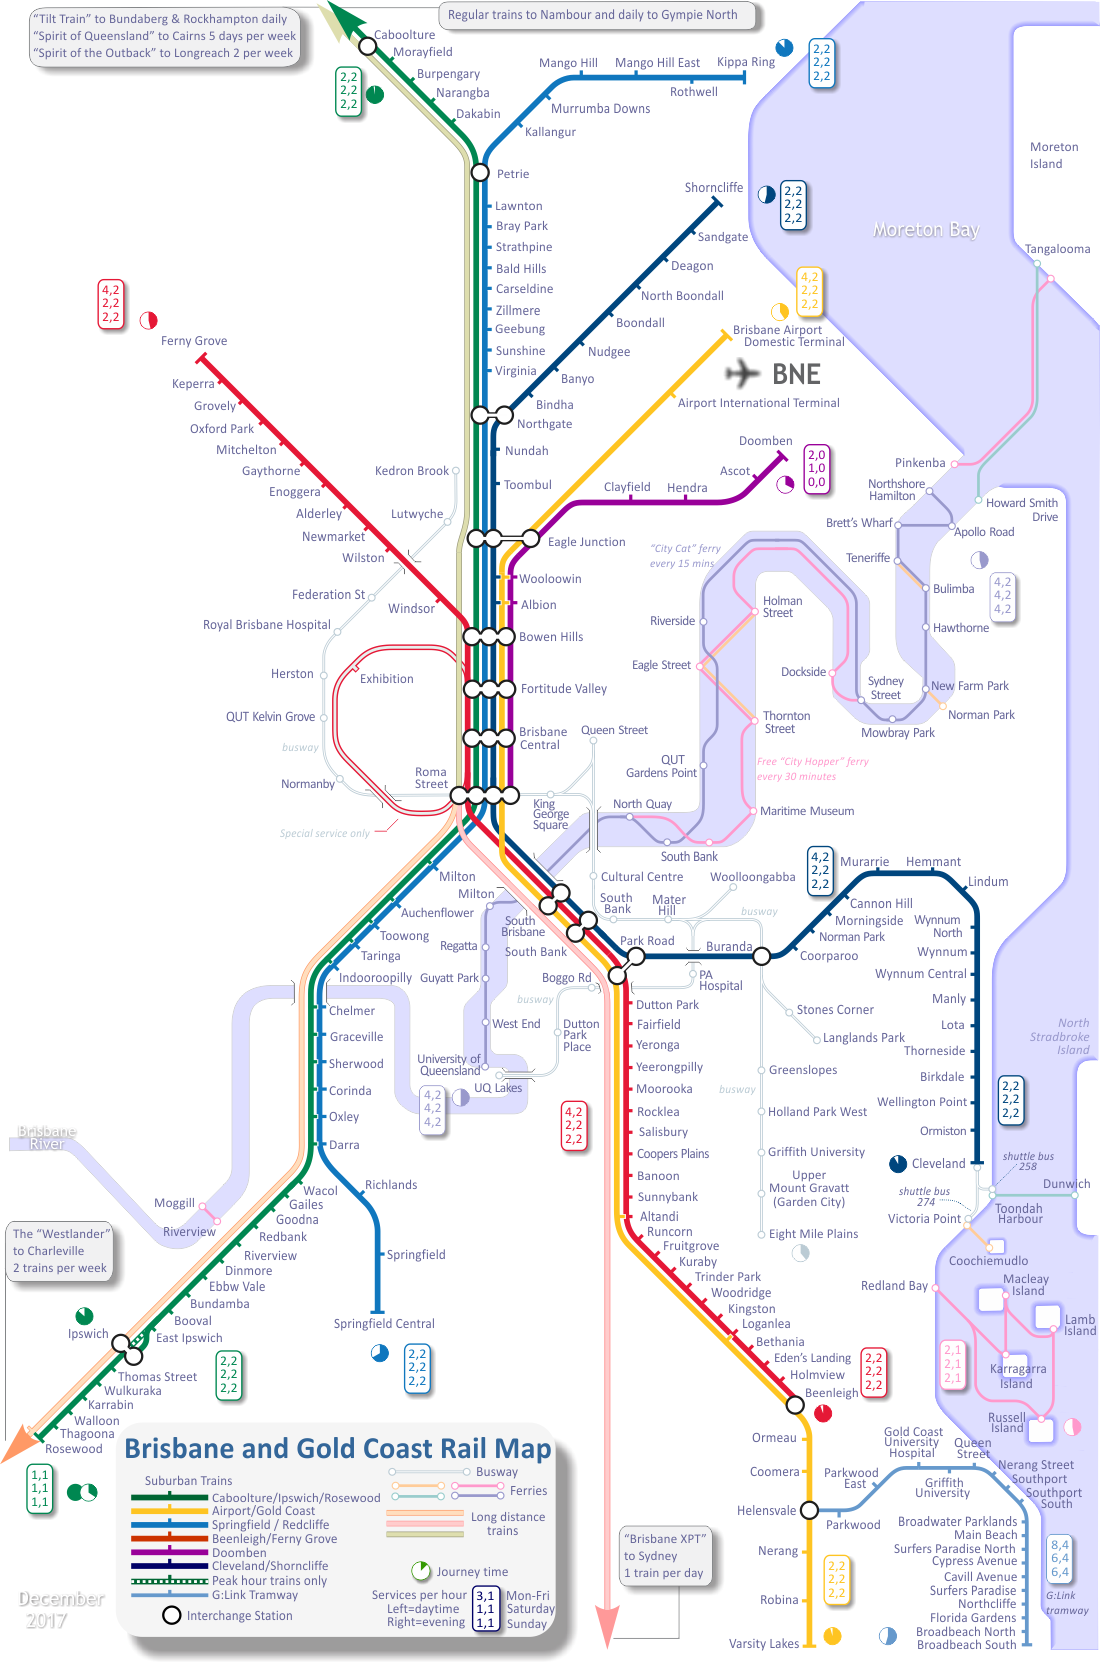 Subway business plan pdf